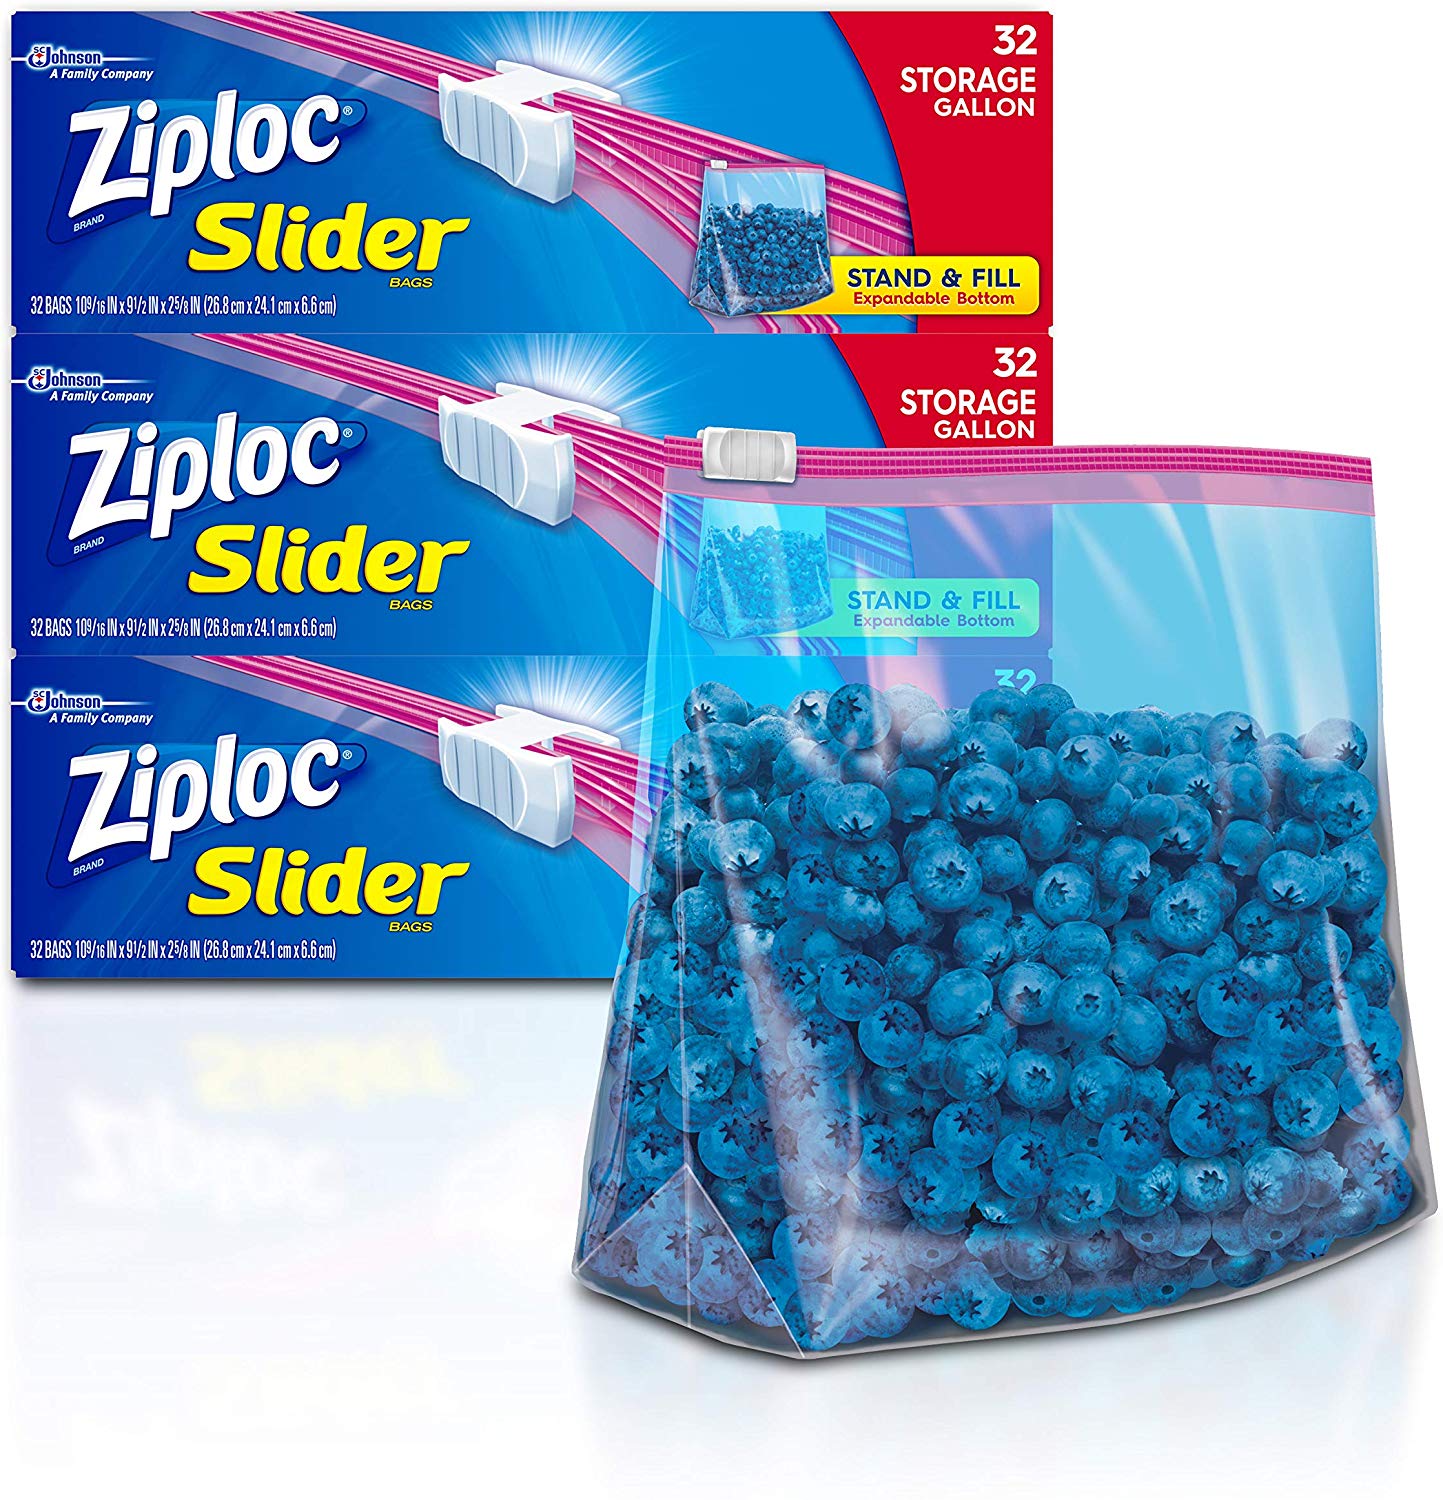 Ziploc Gallon Slider Storage Bags, 32 ct (Pack of 3) 96 total bags $7.58 (REG $14.40)